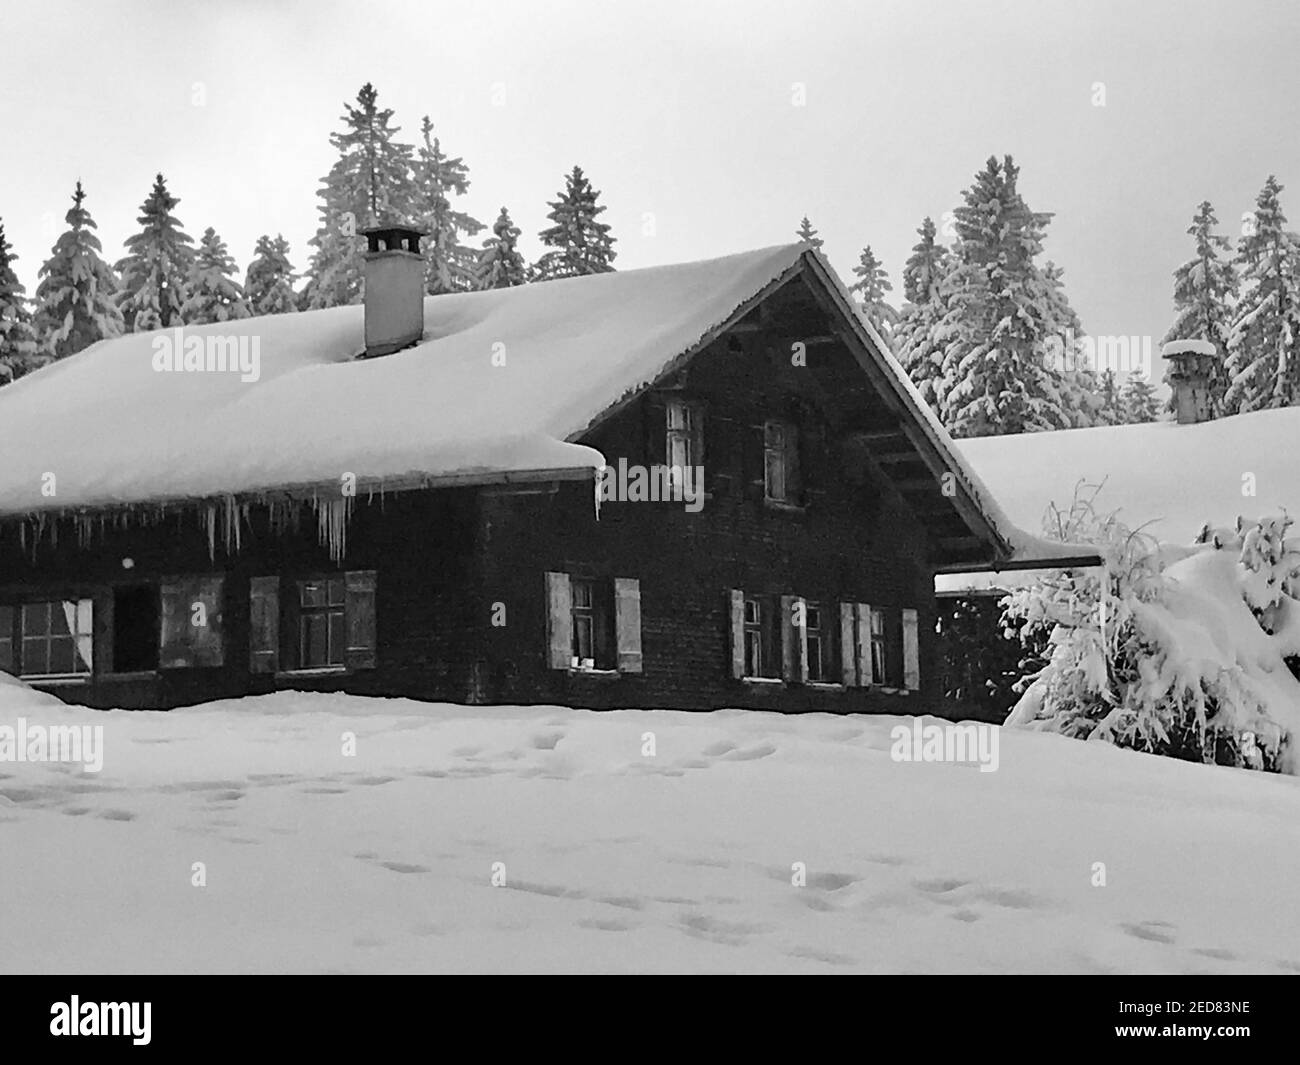 Les cabanes se trouvent sur la piste de ski fraîchement enneigée. village de vacances avec maisons en bois alpin en face d'une forêt de sapins enneigés. Bödele Banque D'Images